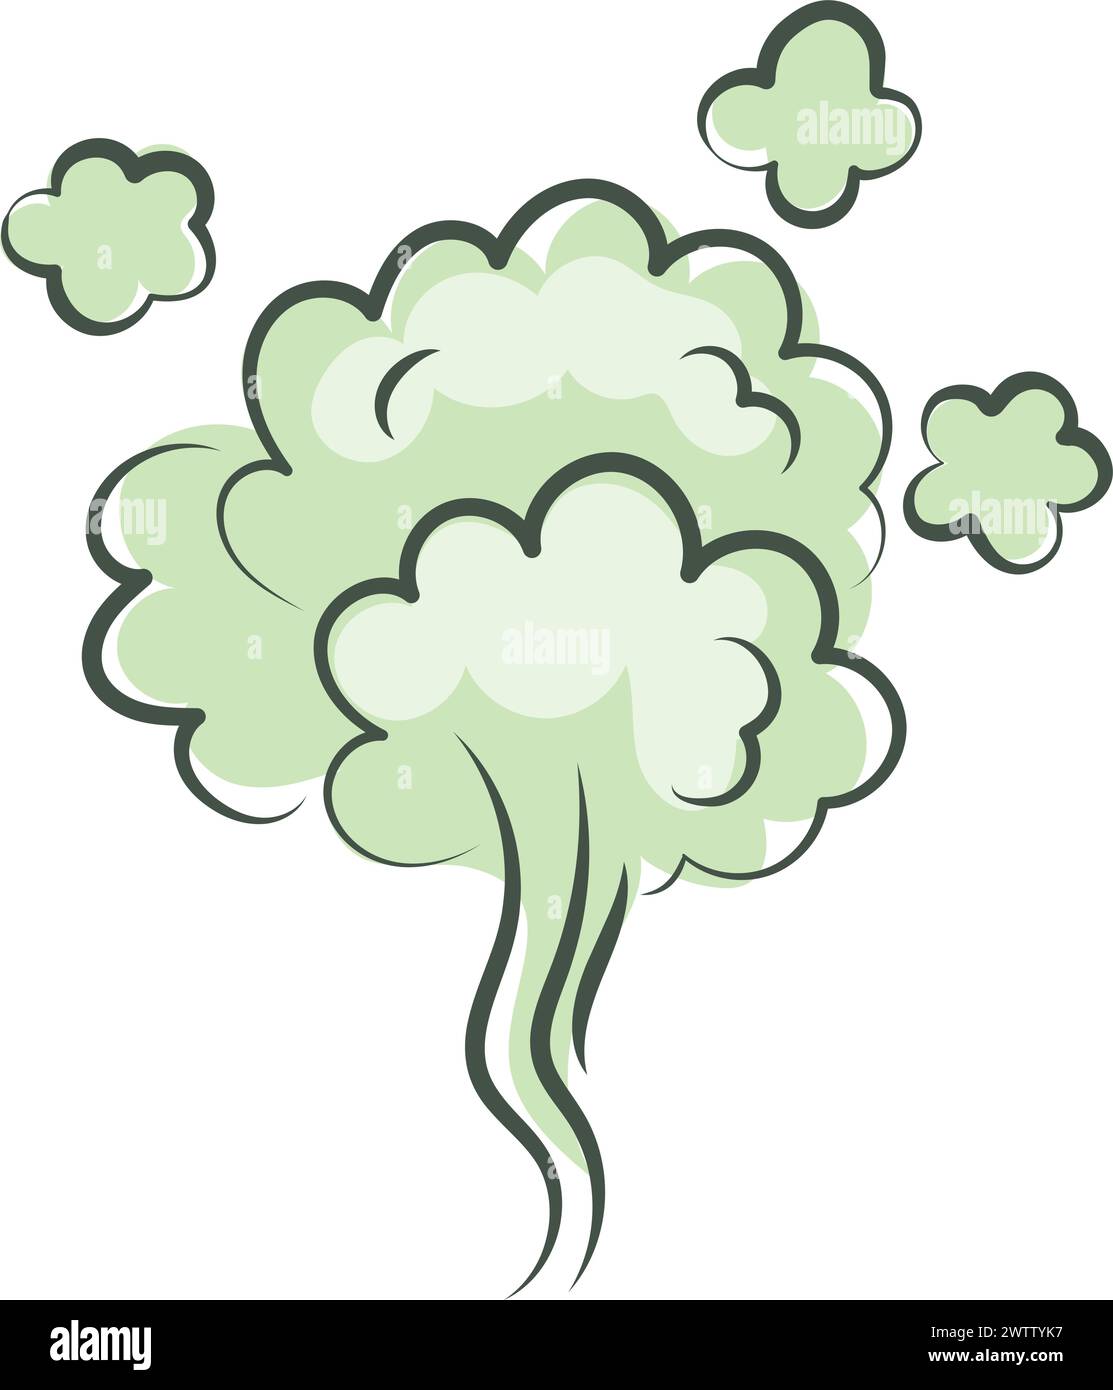 Nuvola di cattivo odore. Effetto veleno verde comico Illustrazione Vettoriale